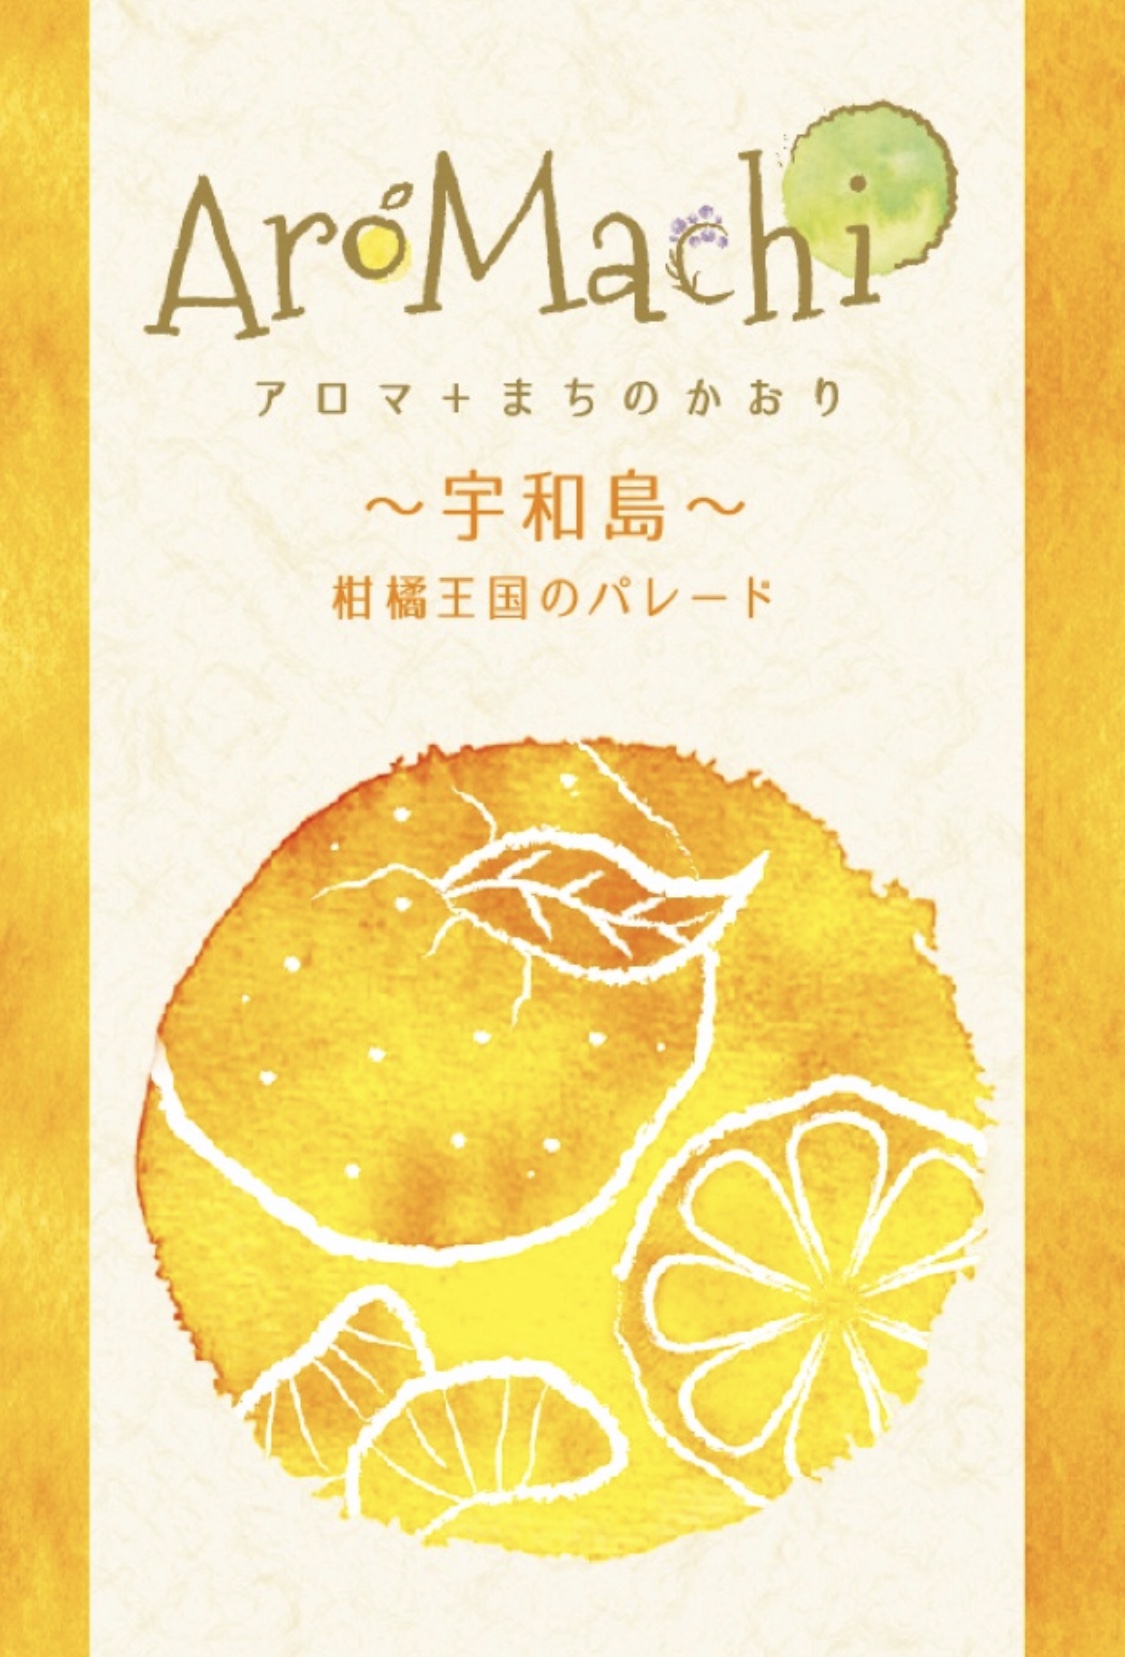 【町の香り アロマチ第7弾】 愛媛県宇和島の香り 柑橘王国のパレードとは？